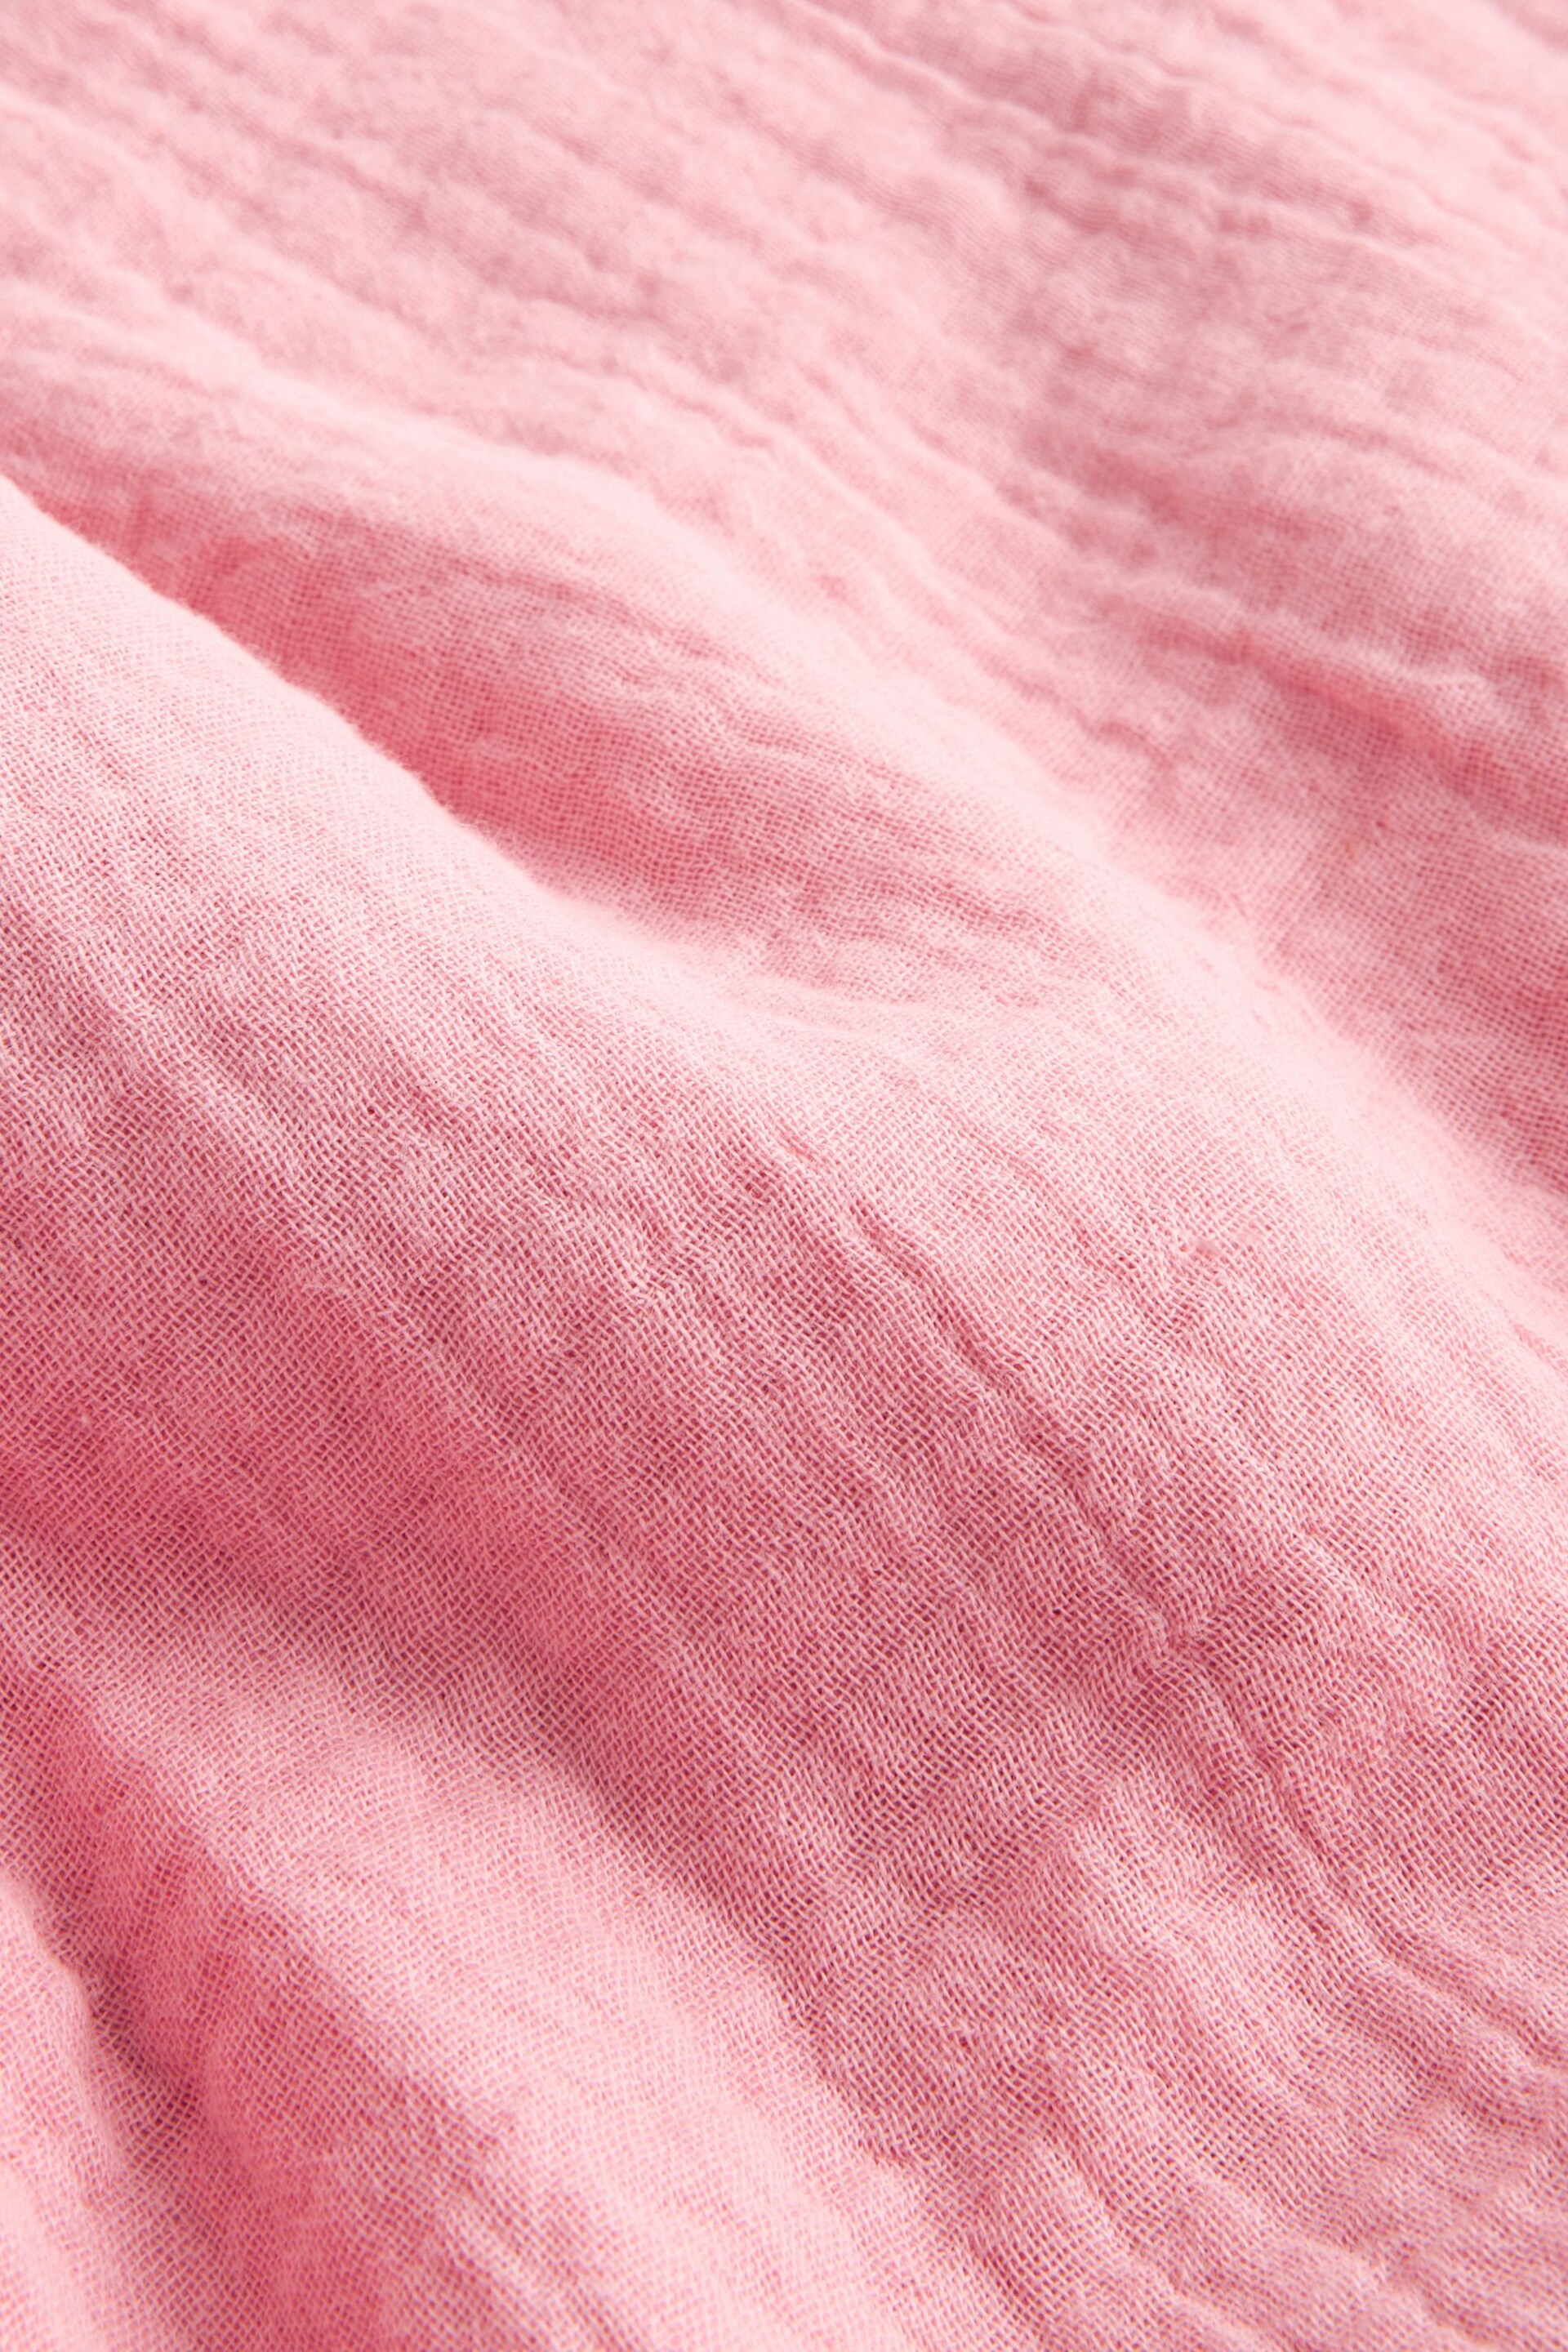 Muslin Pink Baby Blanket - Image 4 of 5